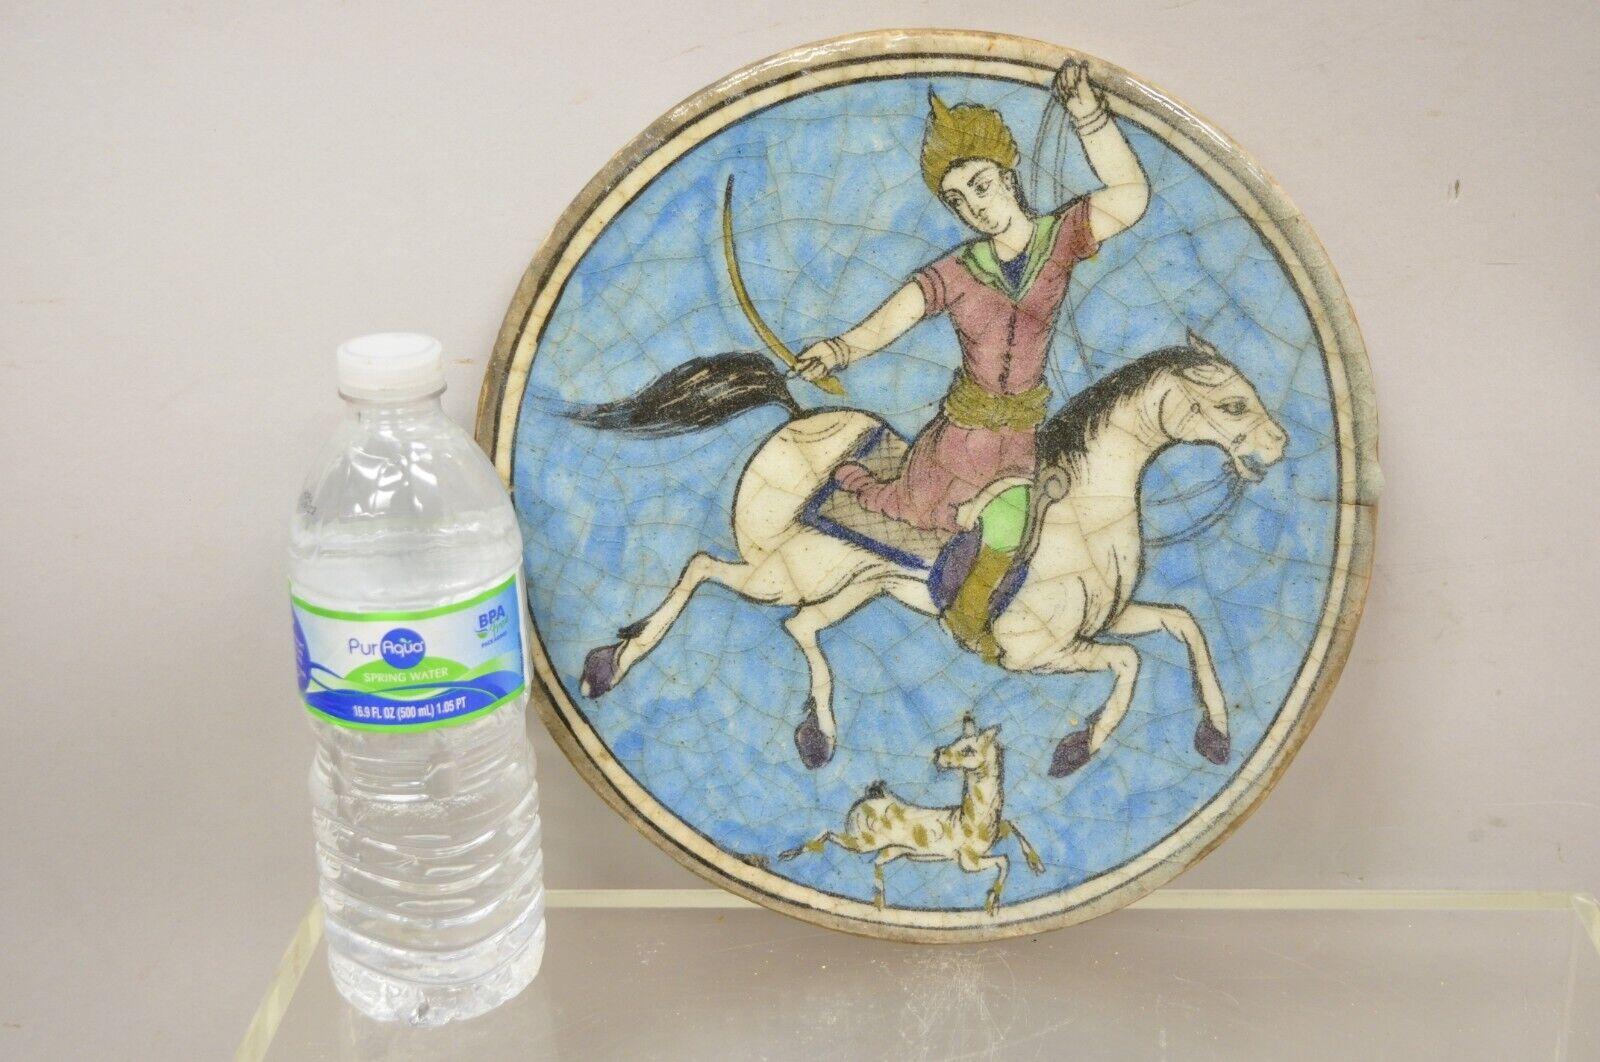 Antike persische Iznik Qajar Stil Keramik Keramik Runde Fliese blau Pferd Reiter C4. Der Artikel zeichnet sich durch eine originale Craquelé-Glasur, eine schwere Keramikkonstruktion, sehr beeindruckende Details und einen wunderbaren Stil und Form